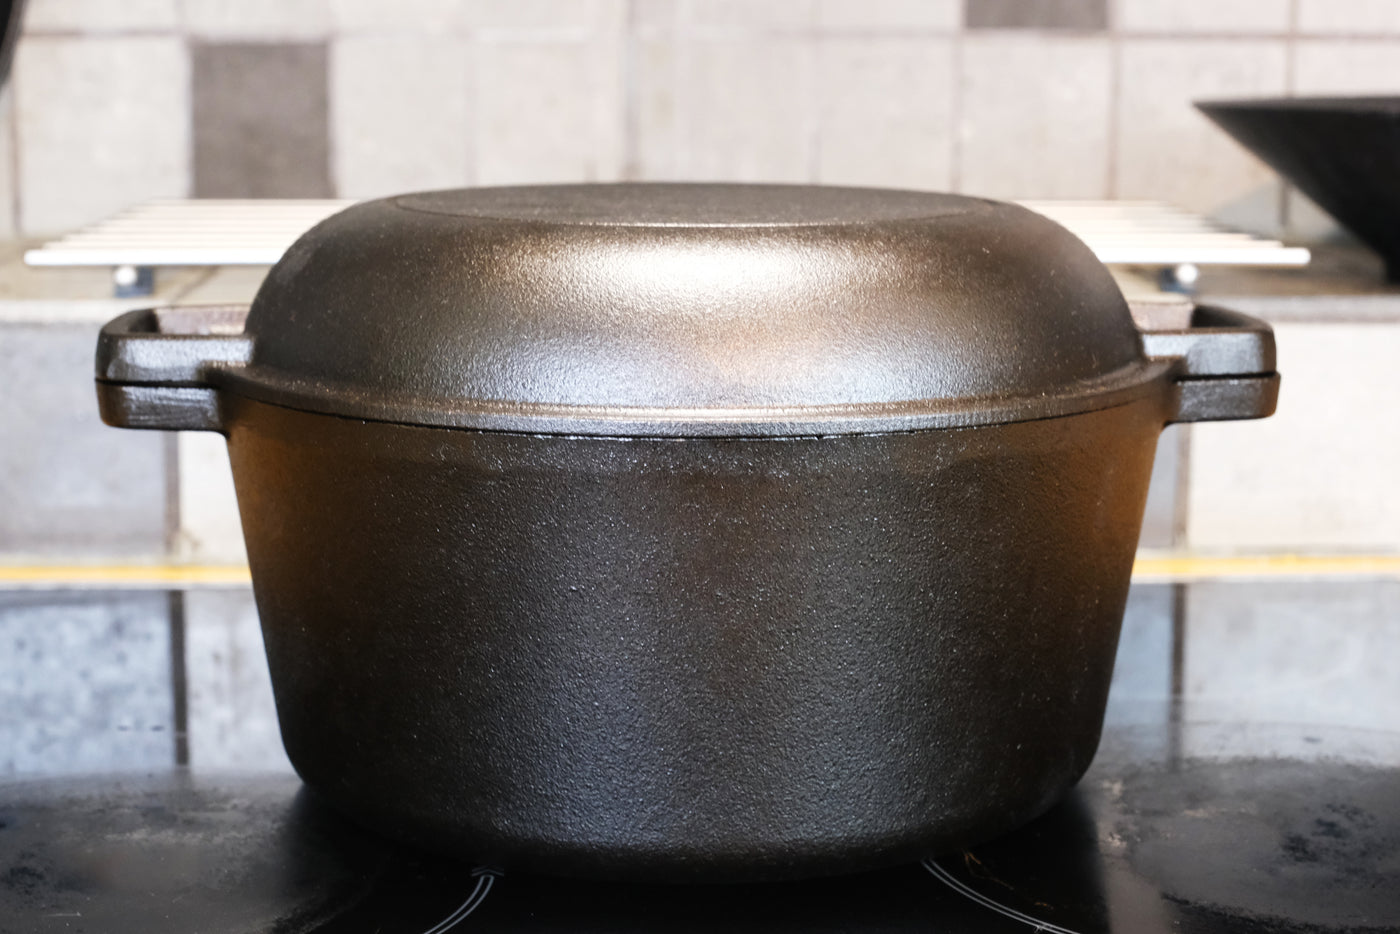 Forno holandês de ferro fundido com tampa de frigideira - 10,23 ”(26 cm) de diâmetro, 4,8 L